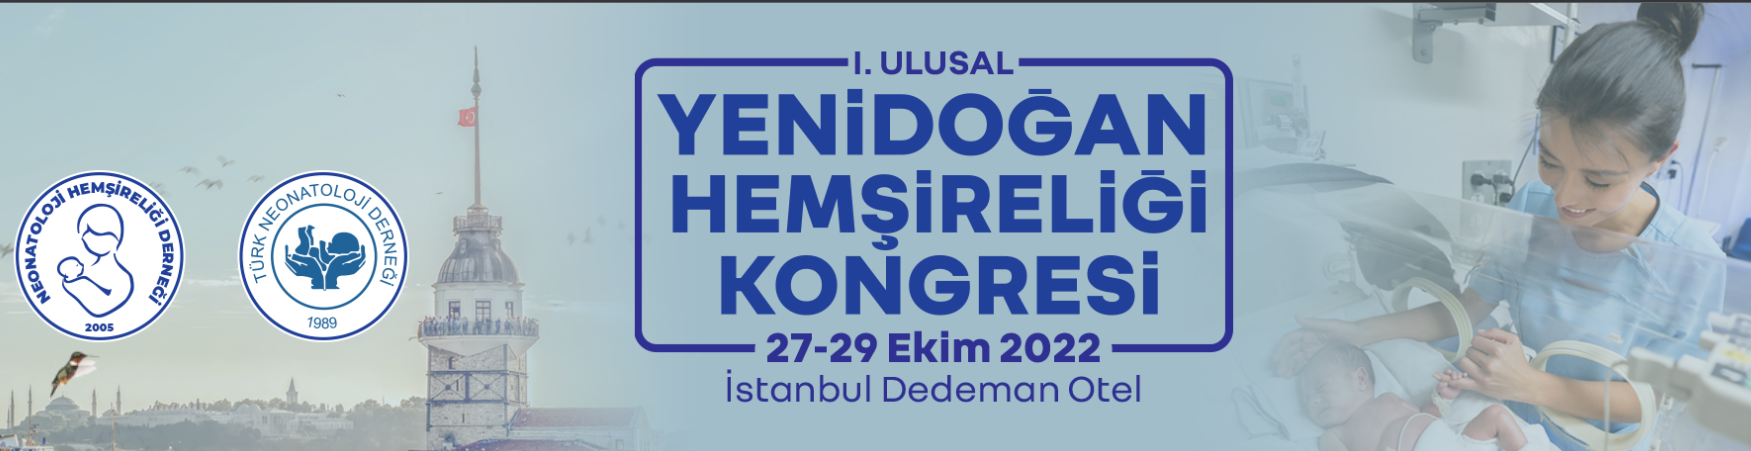 I. Ulusal Yenidoğan Hemşireliği Kongresi